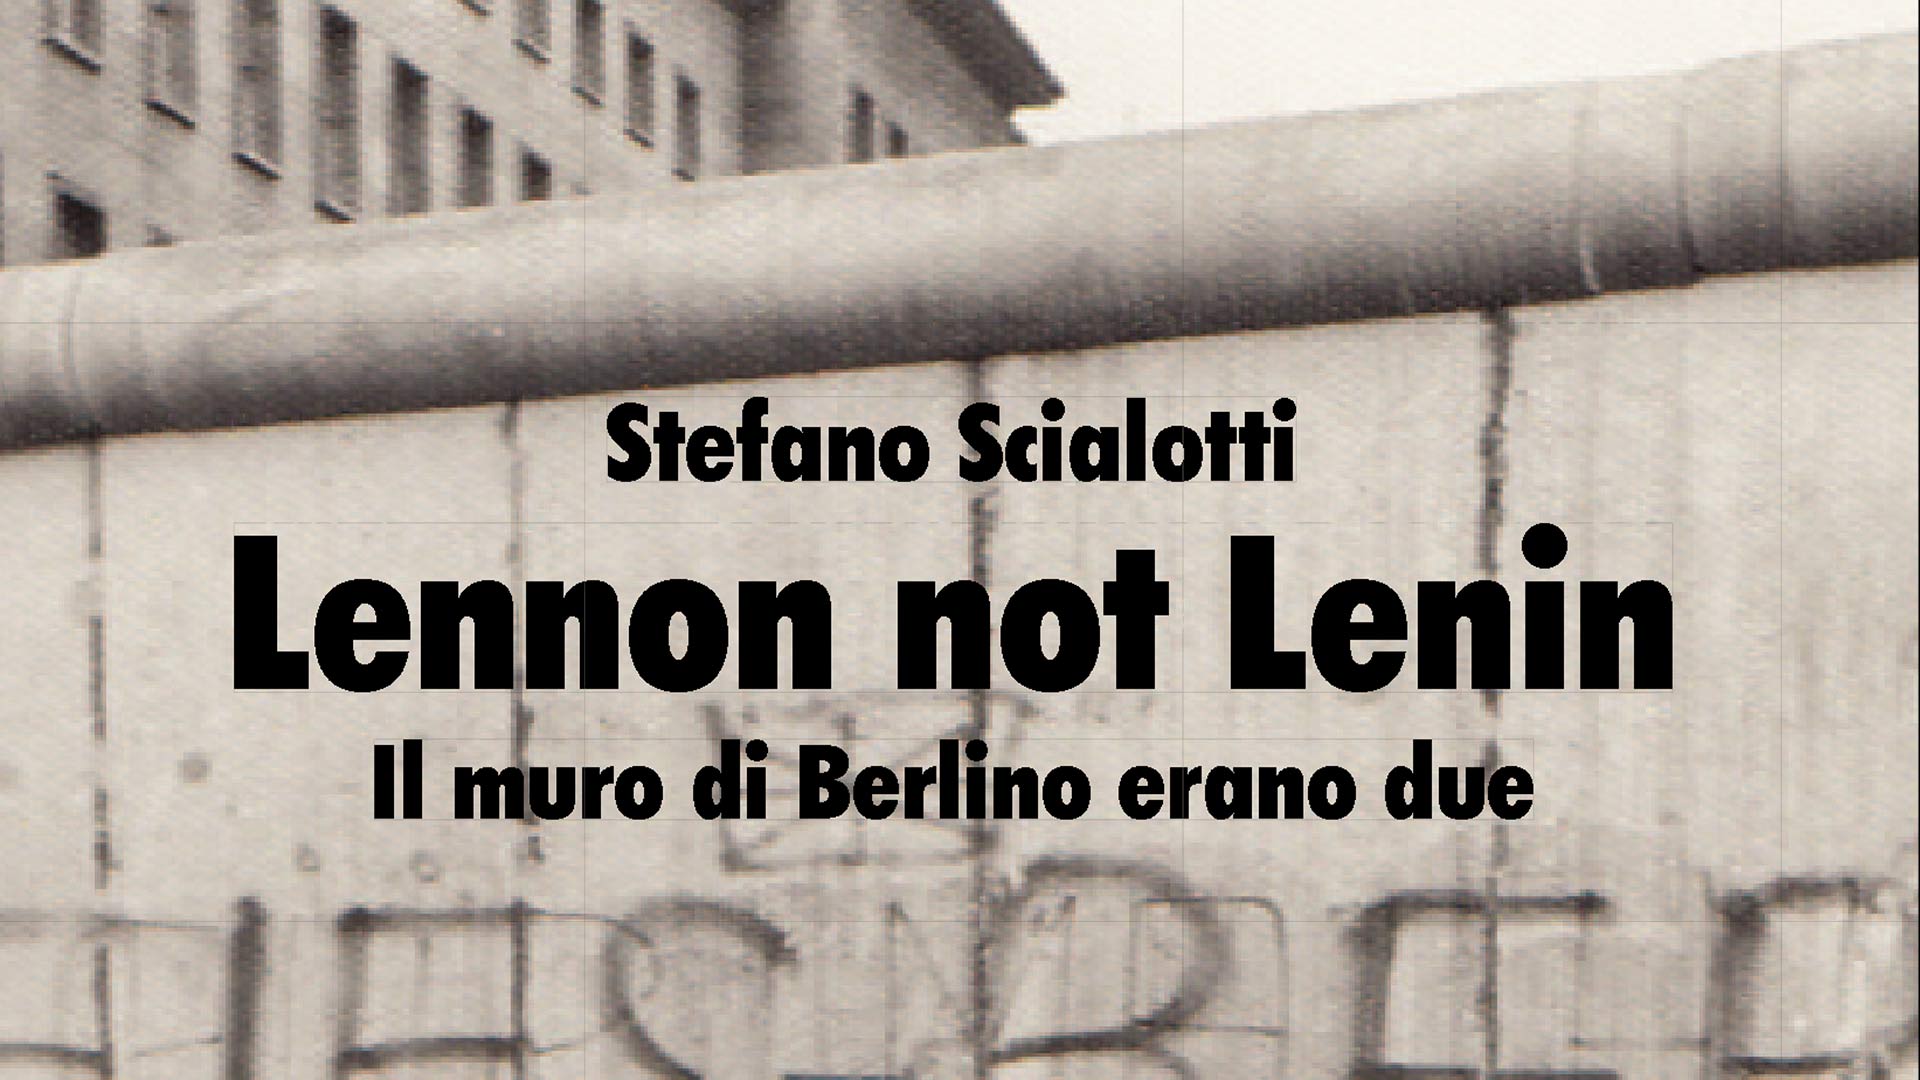 Lennon not Lenin